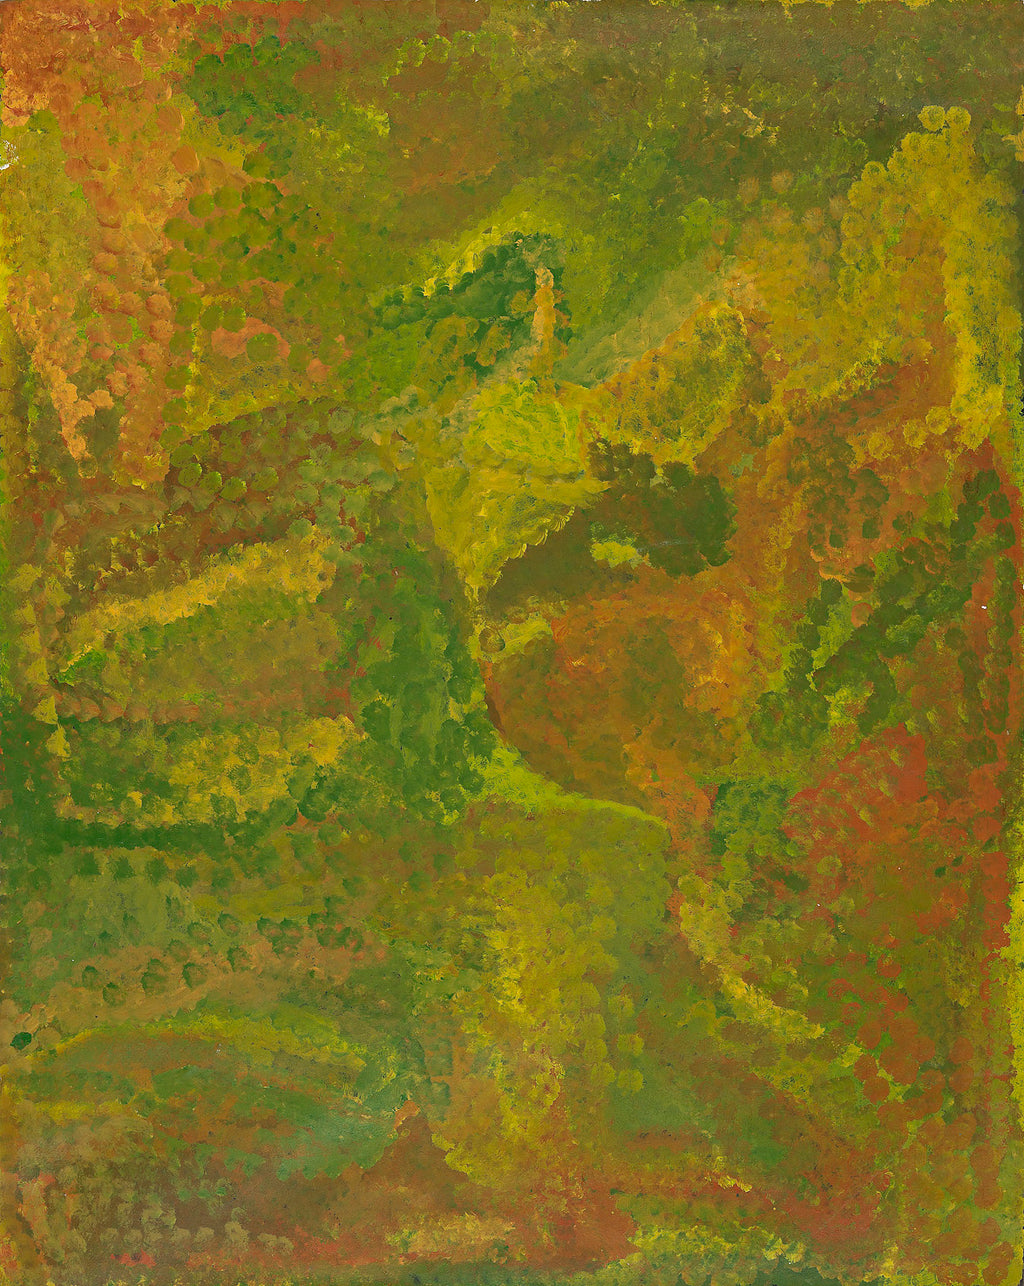 Emily Kame Kngwarreye, 'Summer Growth', 1993, 93C016, 120 x 150 cm